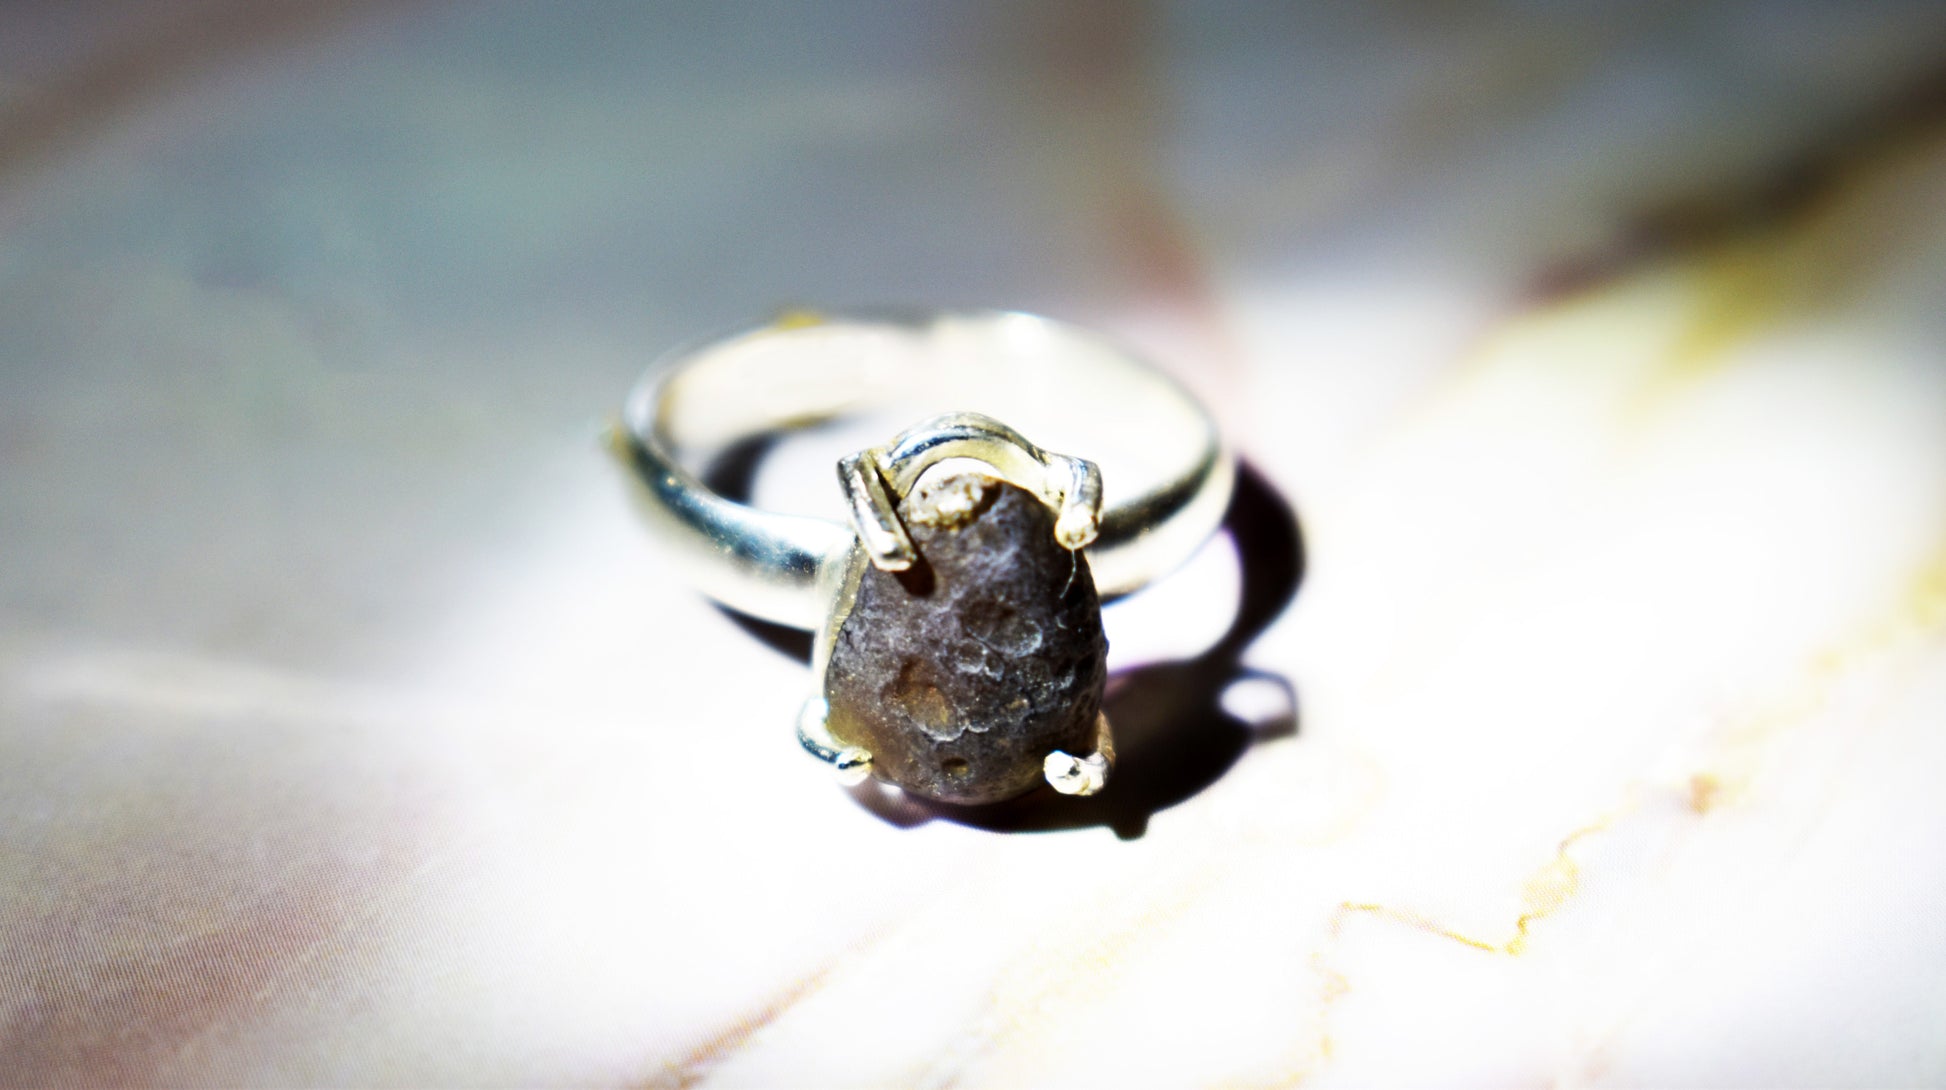 stones-of-transformation - Cintamani (Saffordite) Ring (Size 7) - Stones of Transformation - 